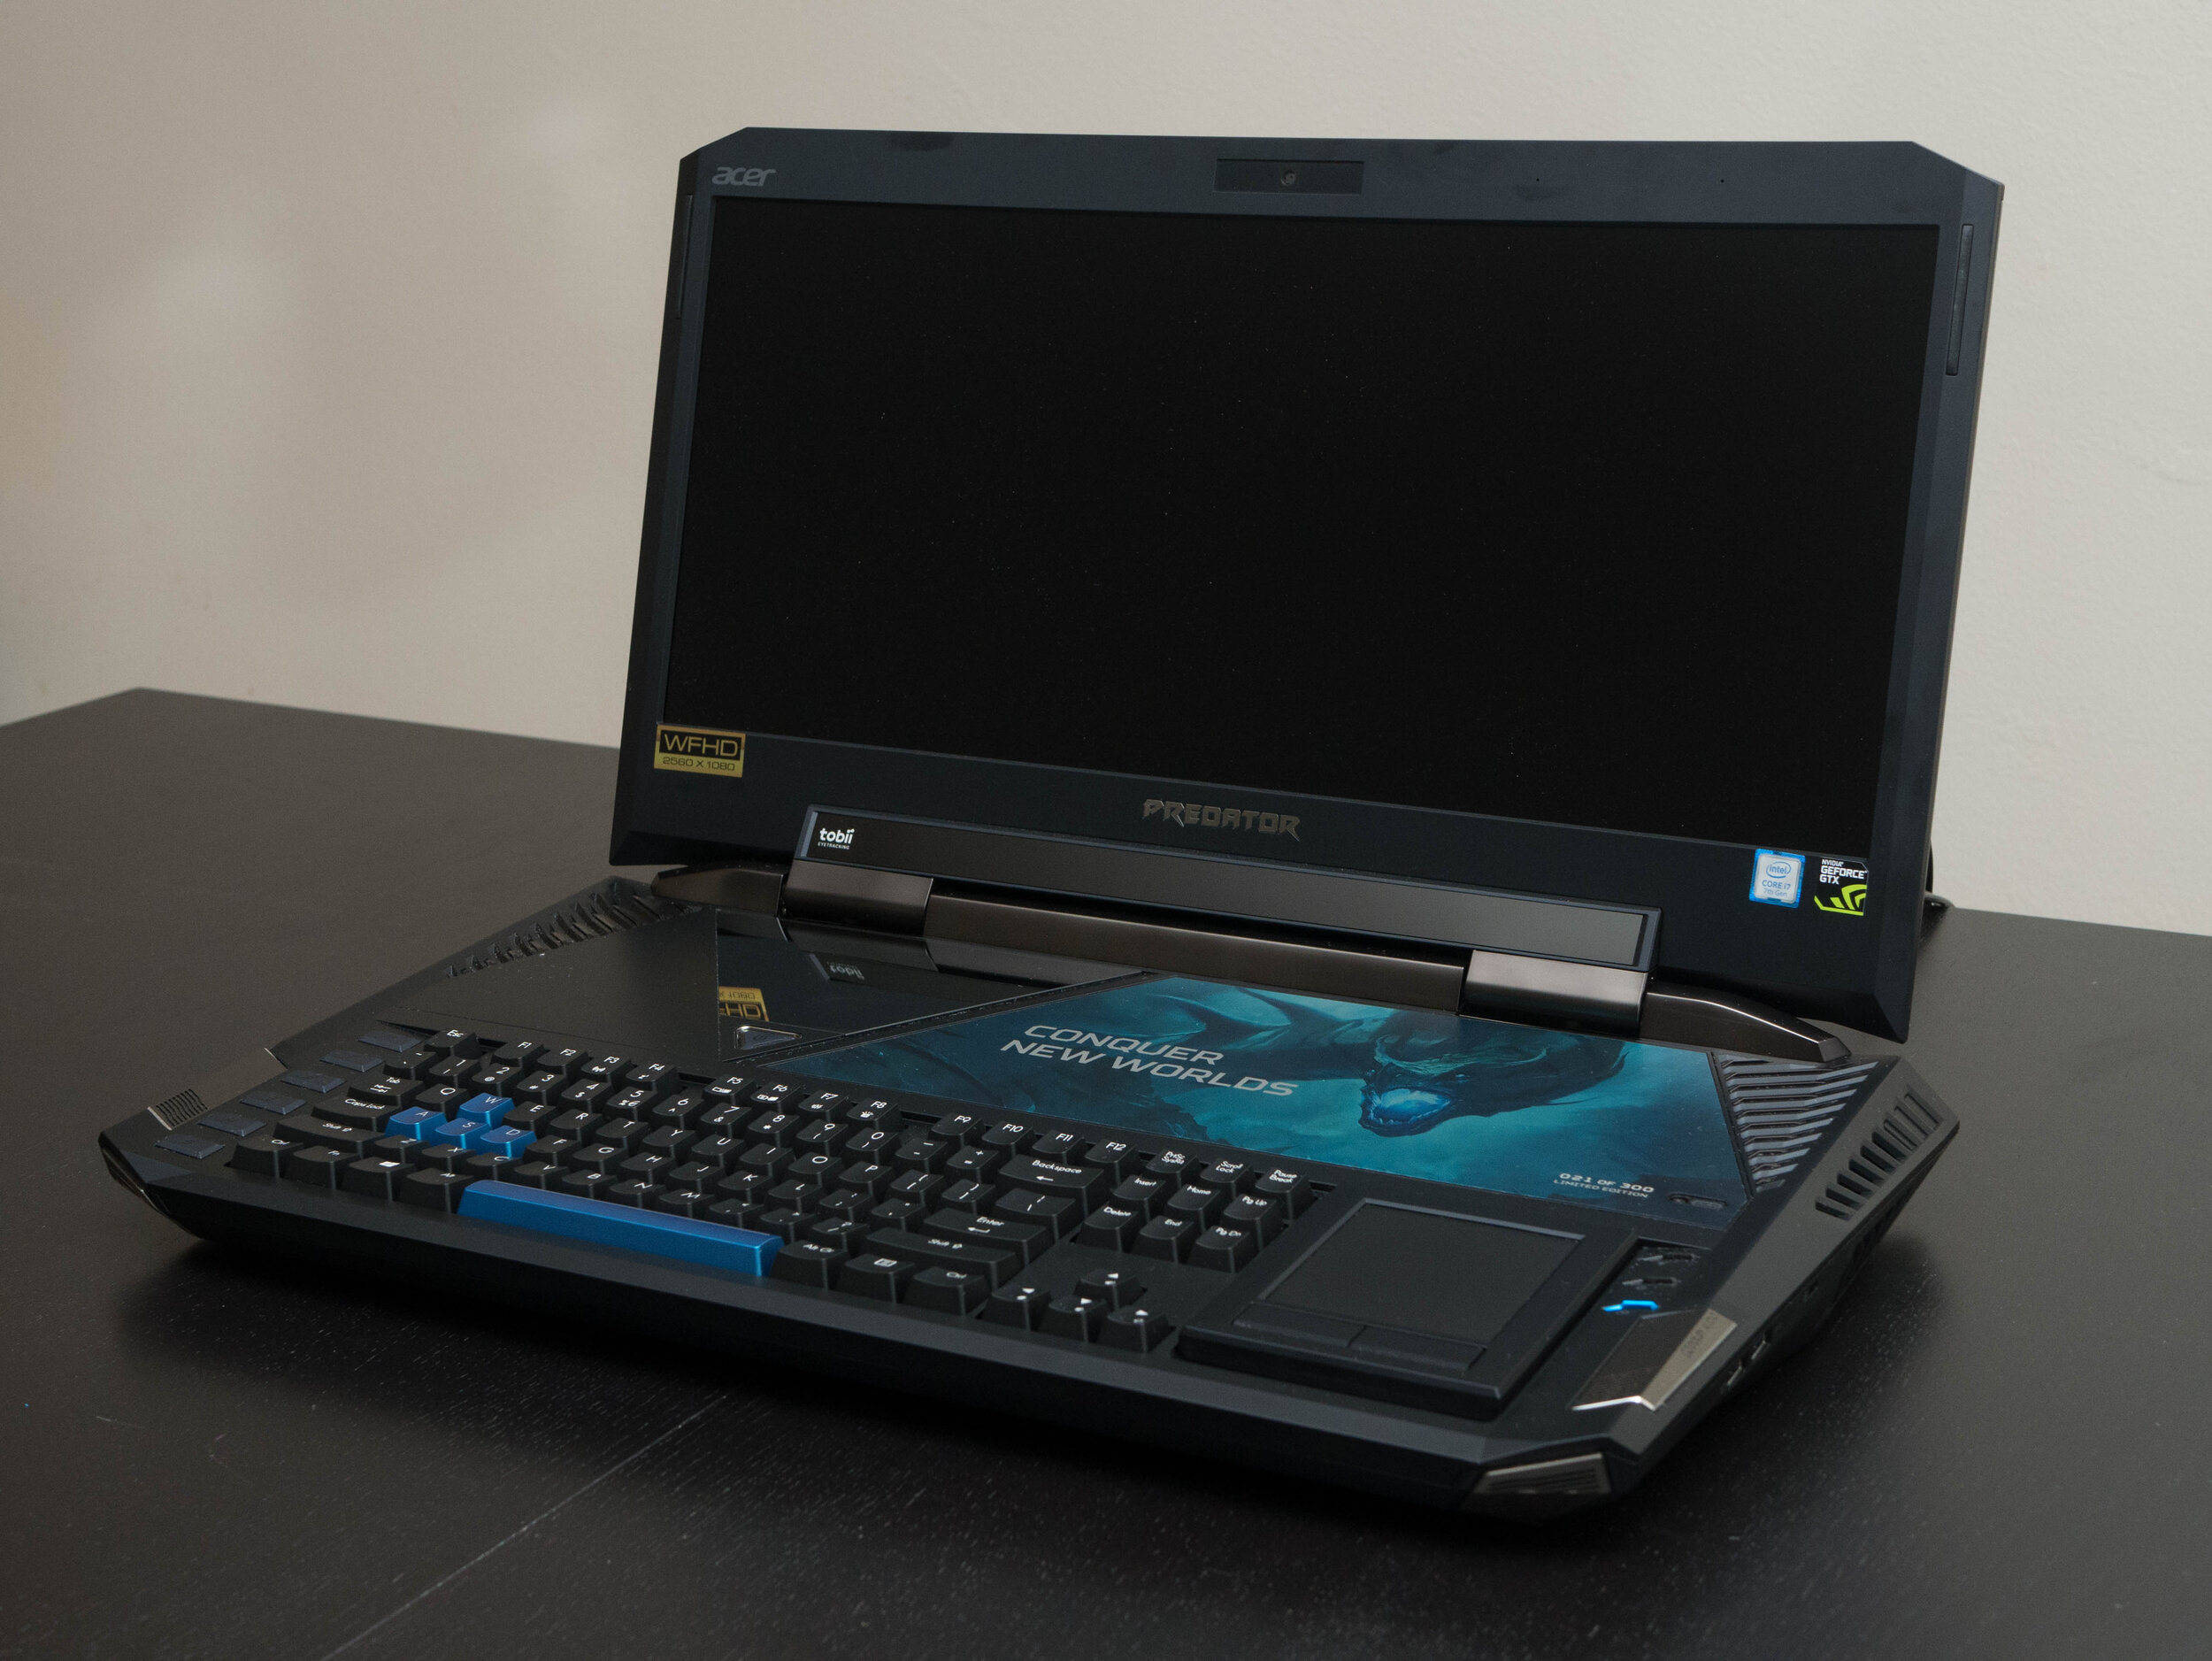 Acer Predator 21 X - A $9,000 Gaming Laptop!